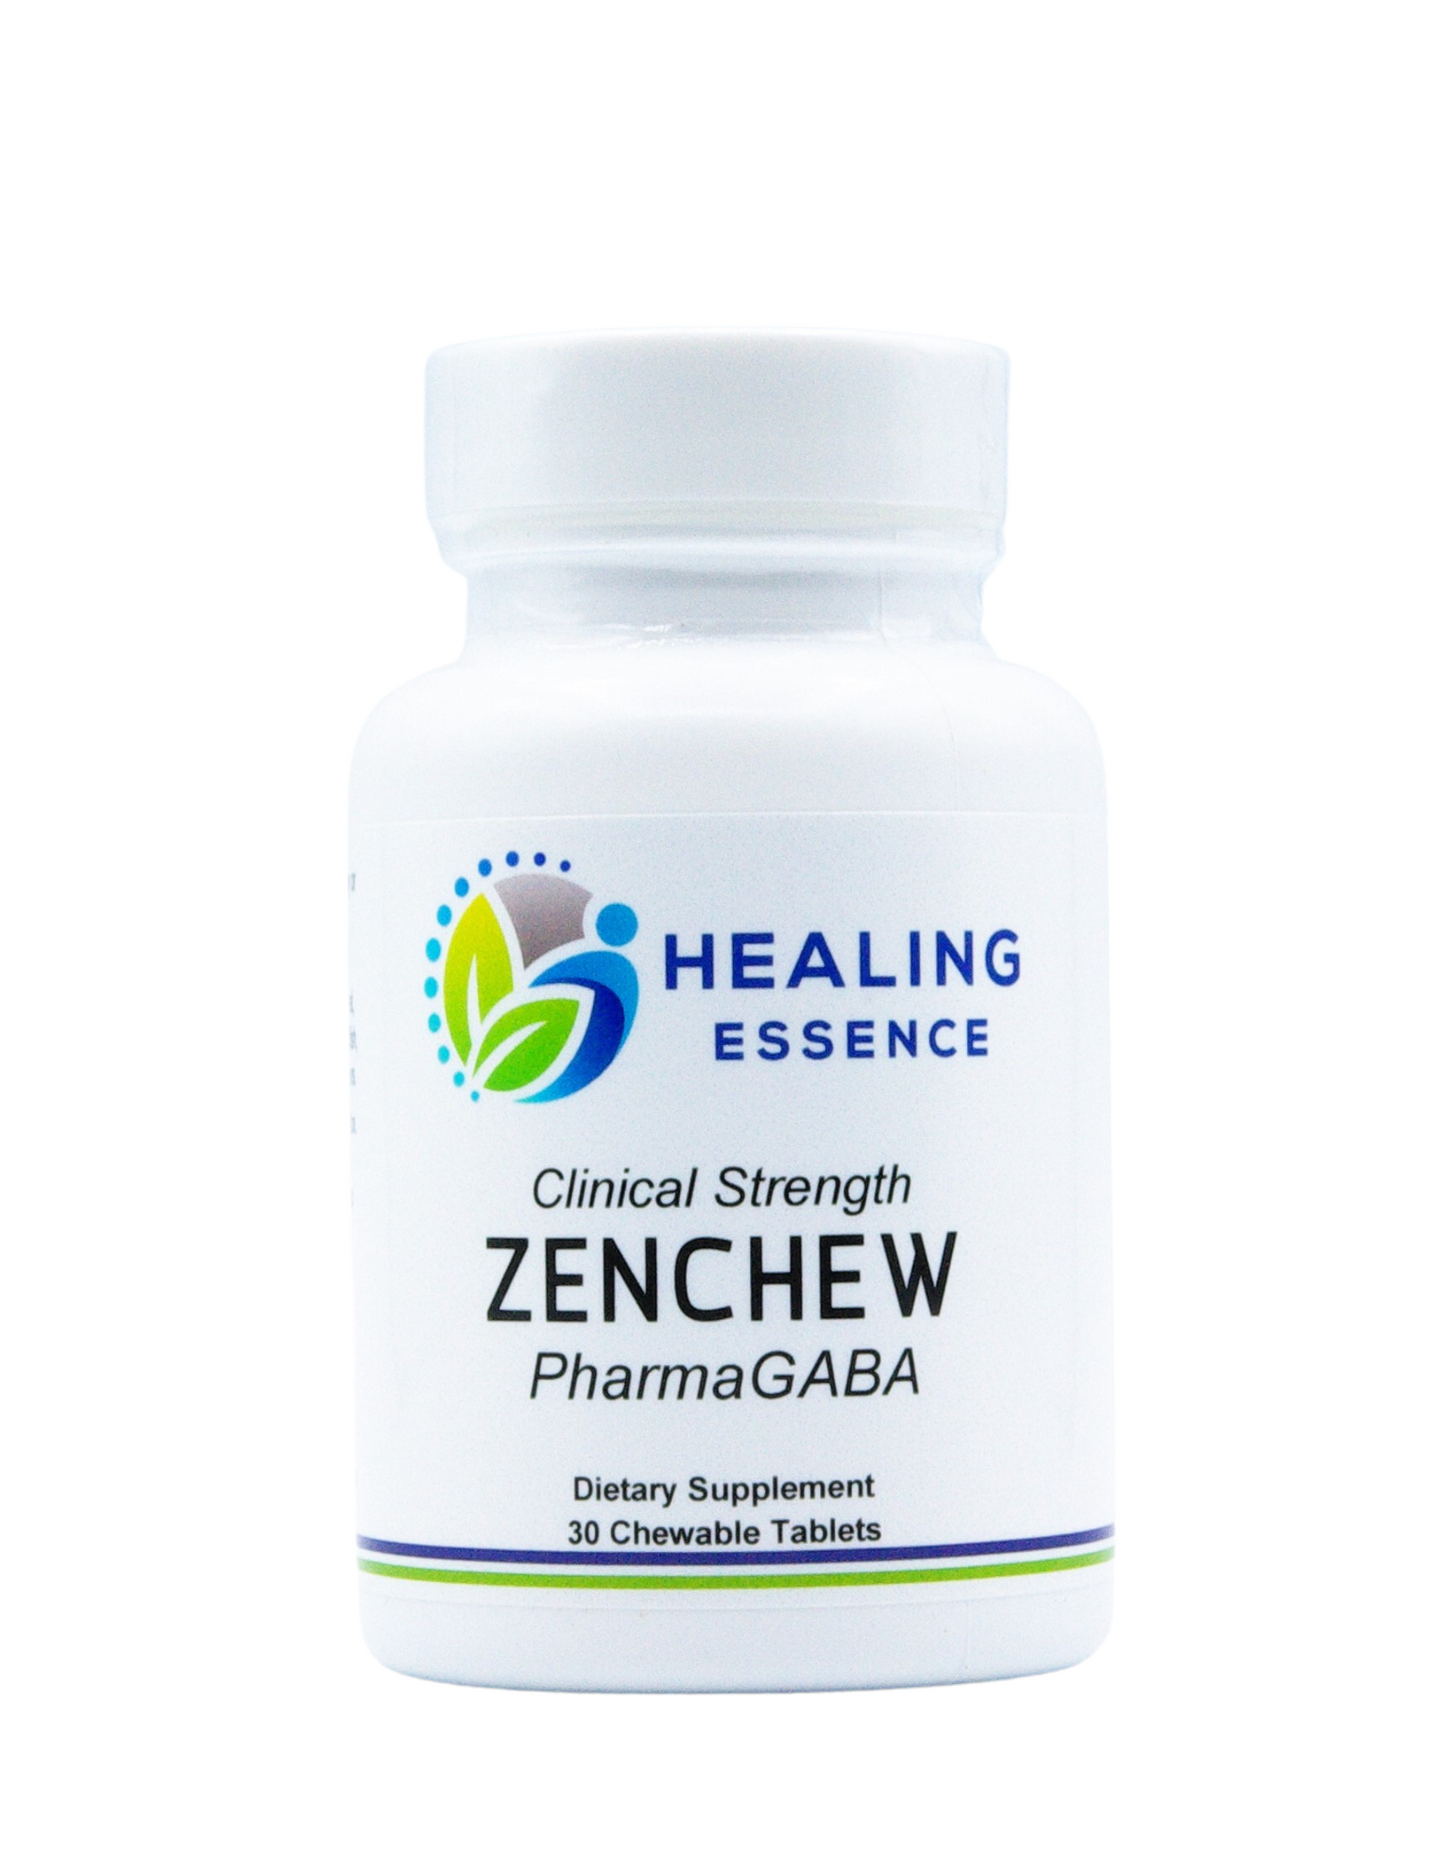 ZenChew PharmaGABA